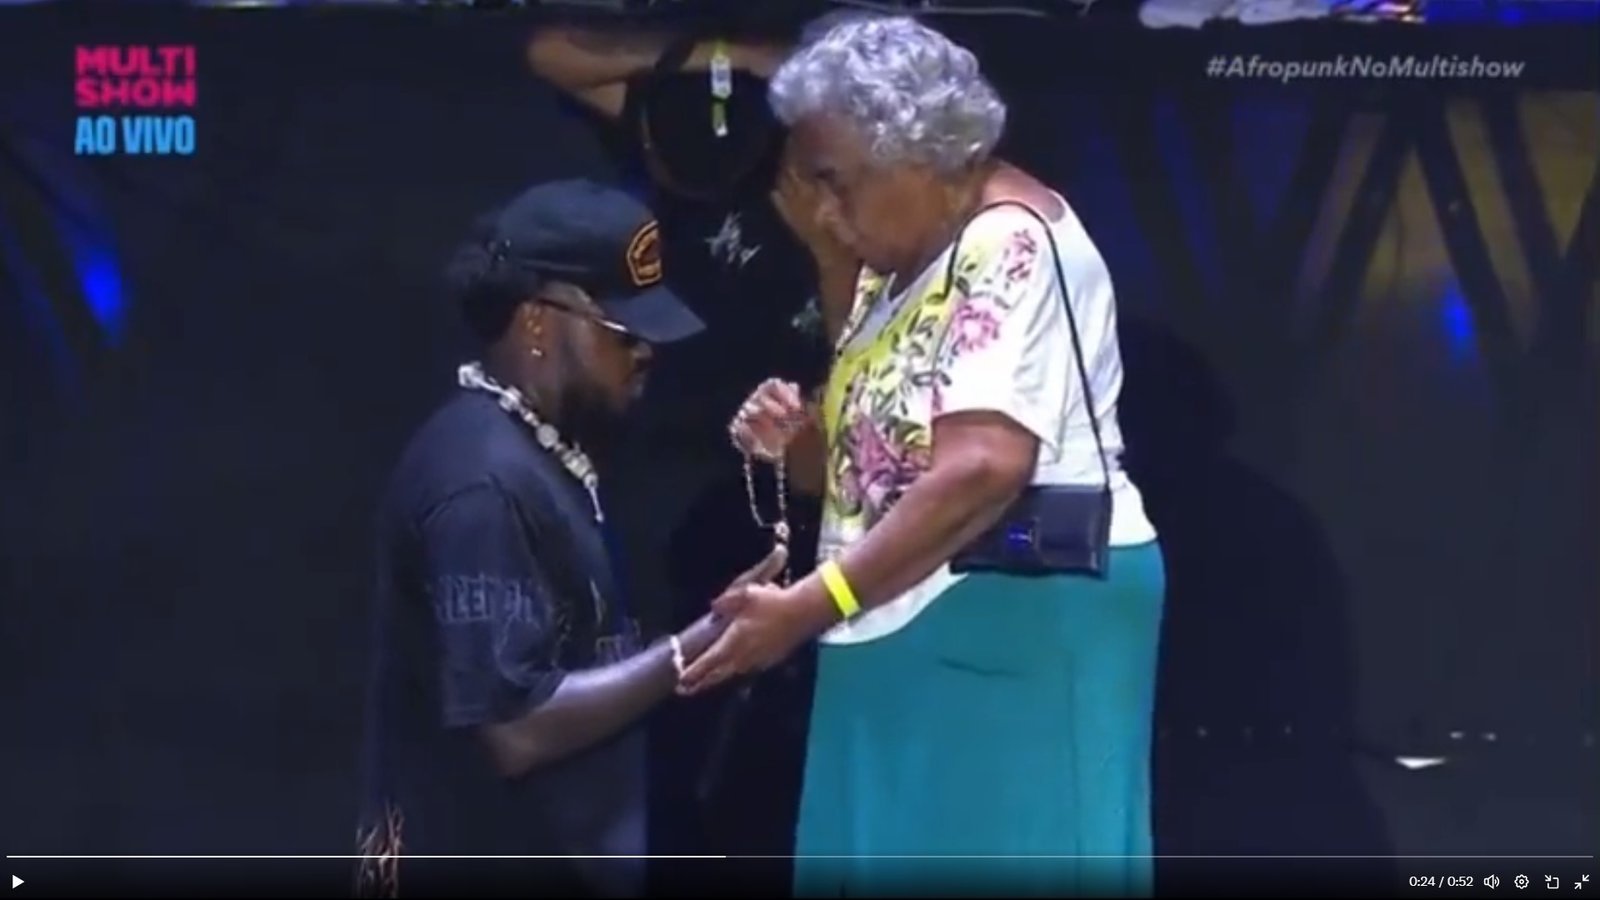 Djonga emociona público ao levar sua avó ao palco durante apresentação no festival AfroPunk na Bahia